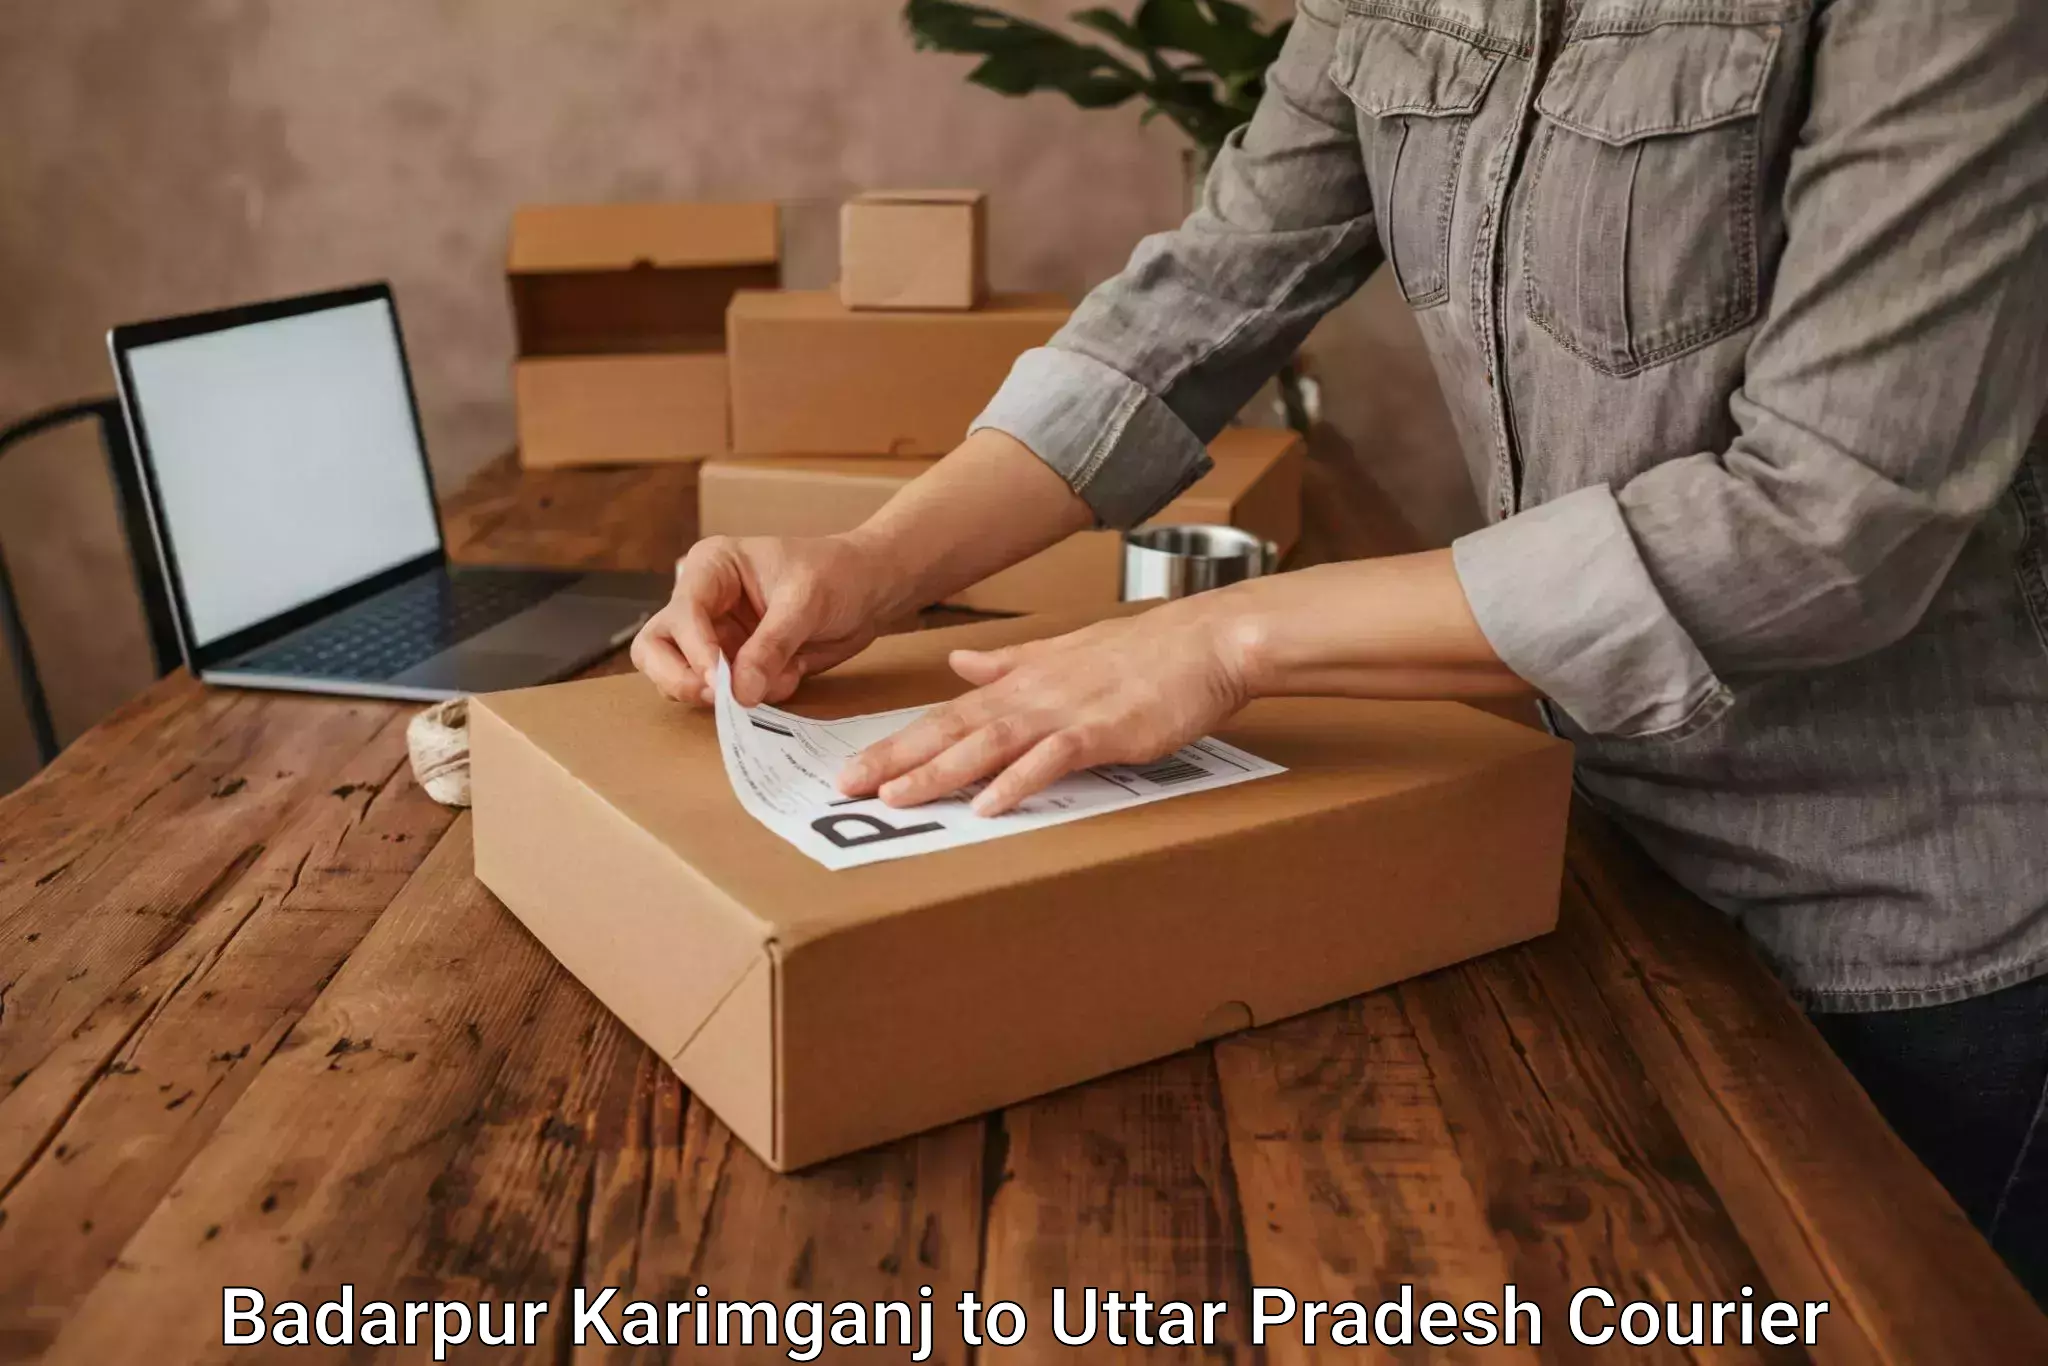 High-priority parcel service Badarpur Karimganj to Bijnor